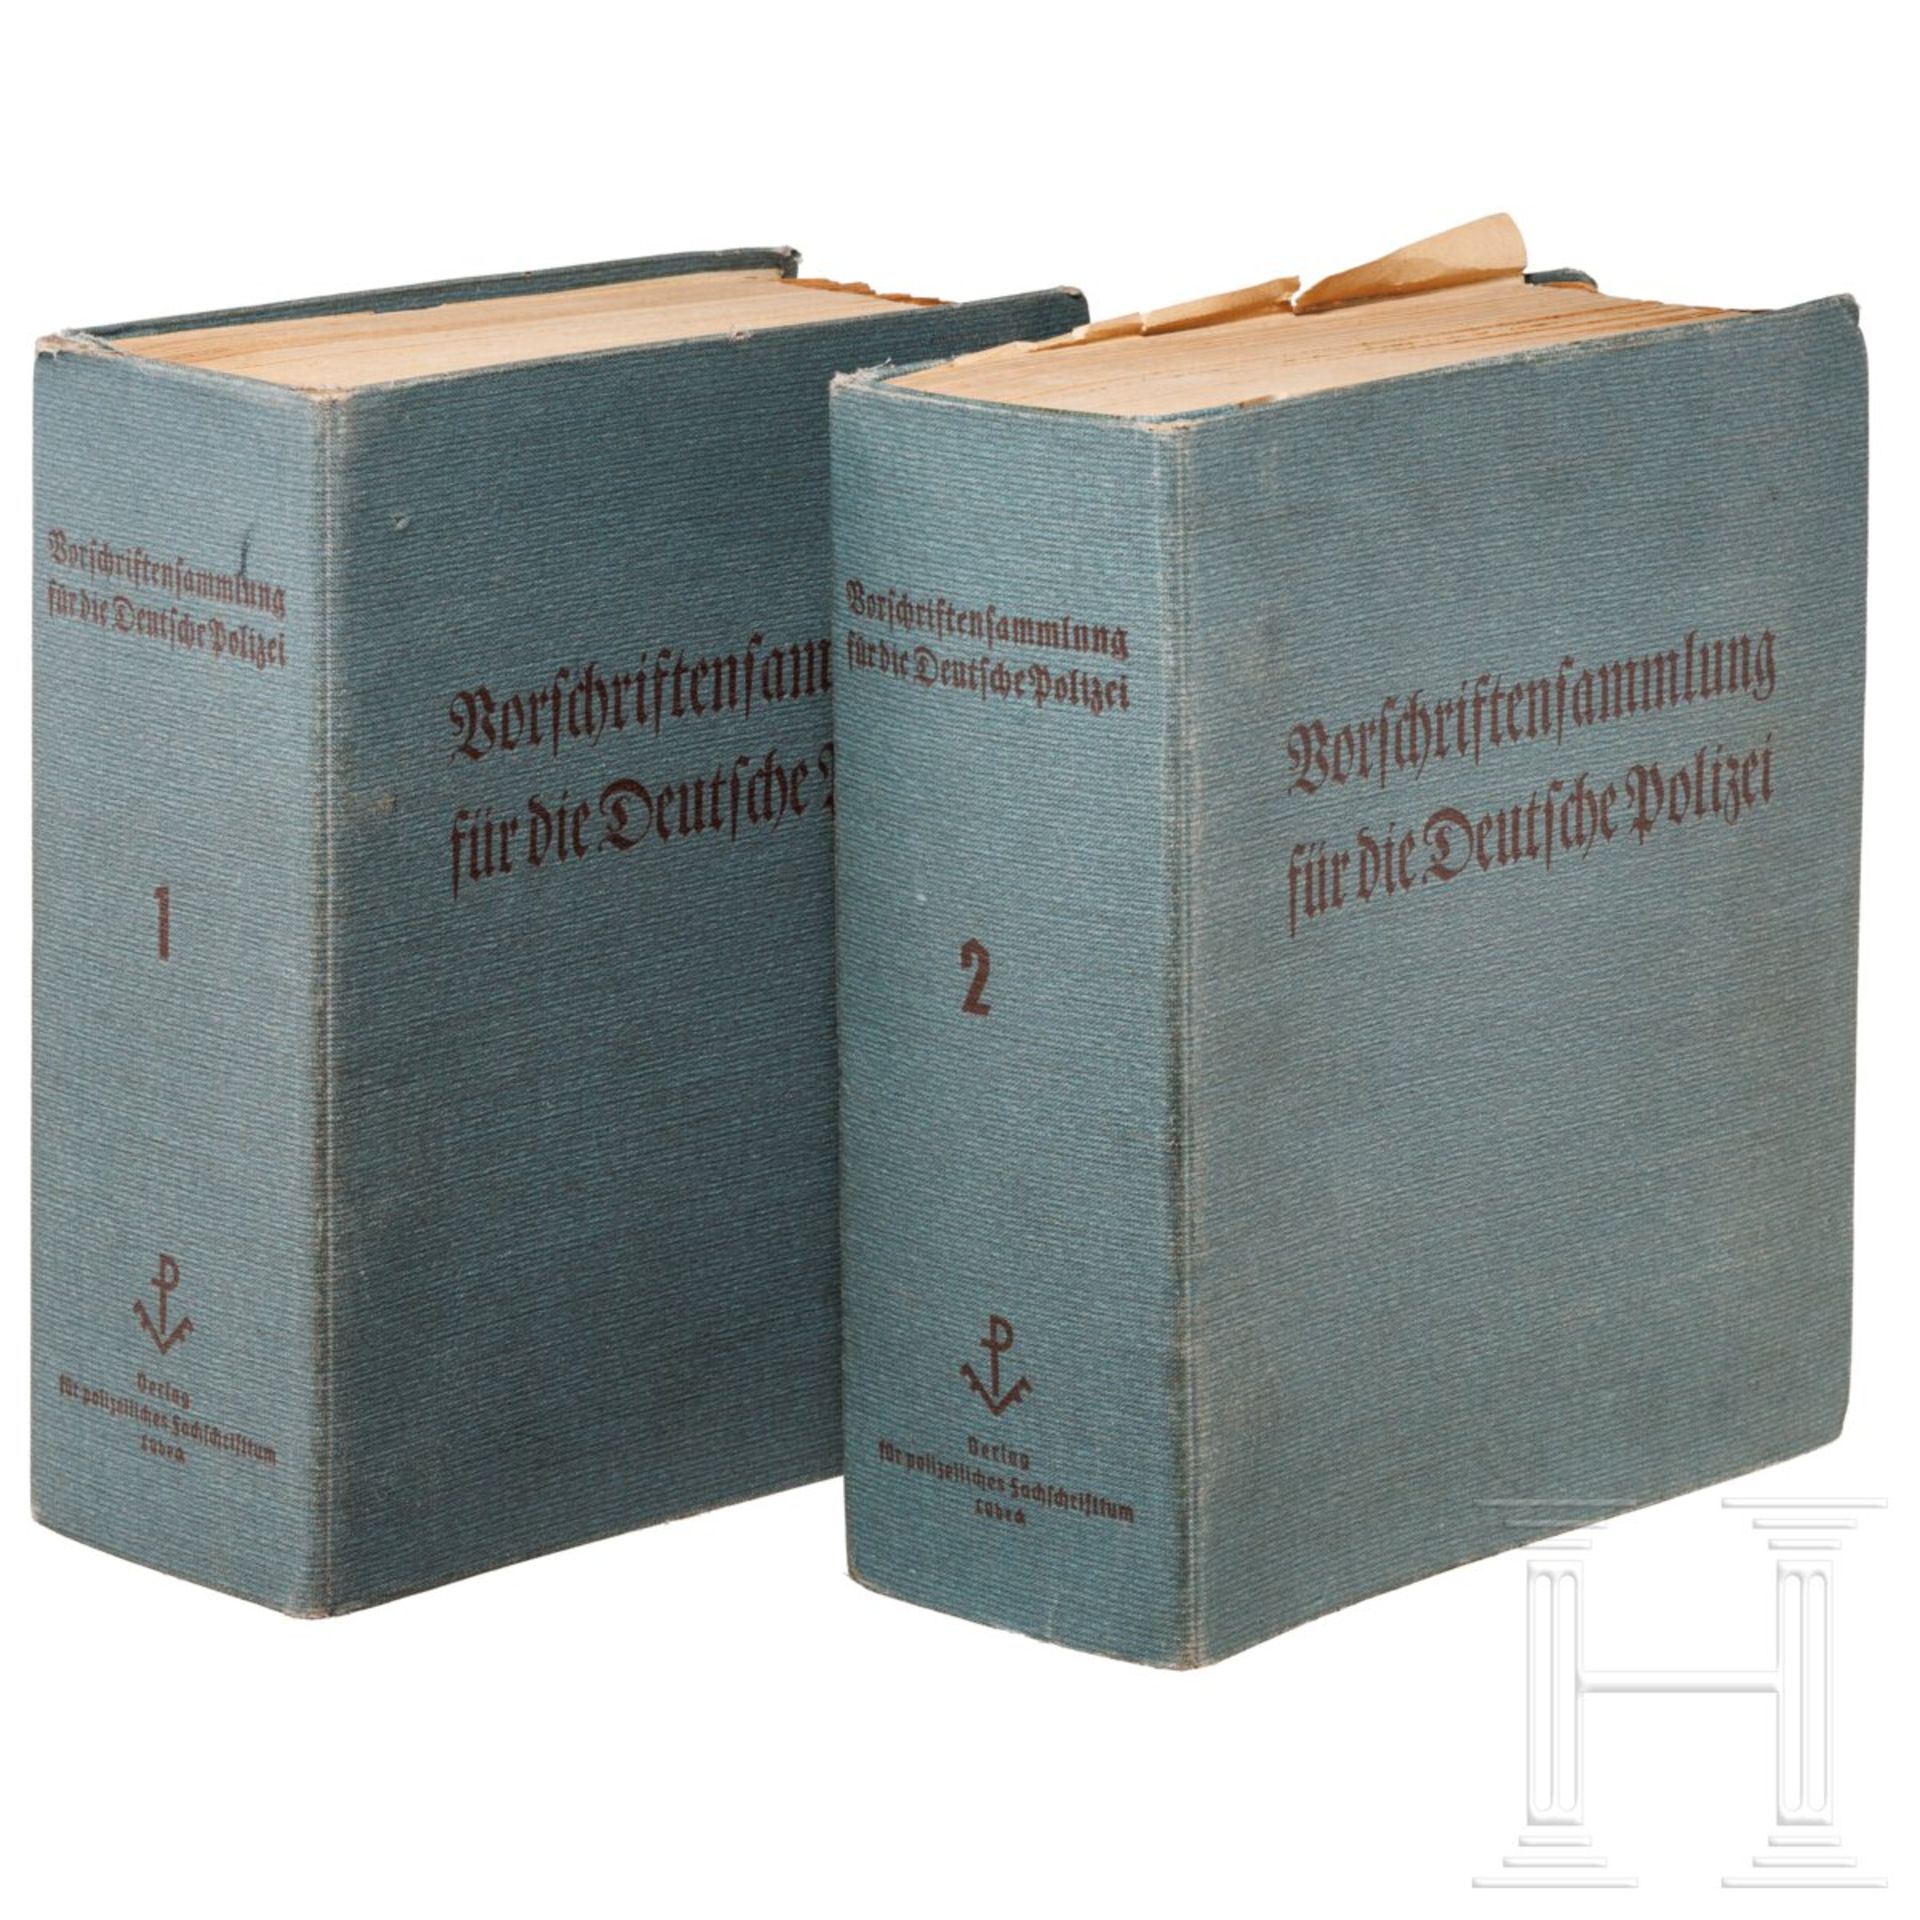 "Vorschriftensammlung für die Deutsche Polizei - Ausgabe Preußen", Band 1 und 2, um 1939